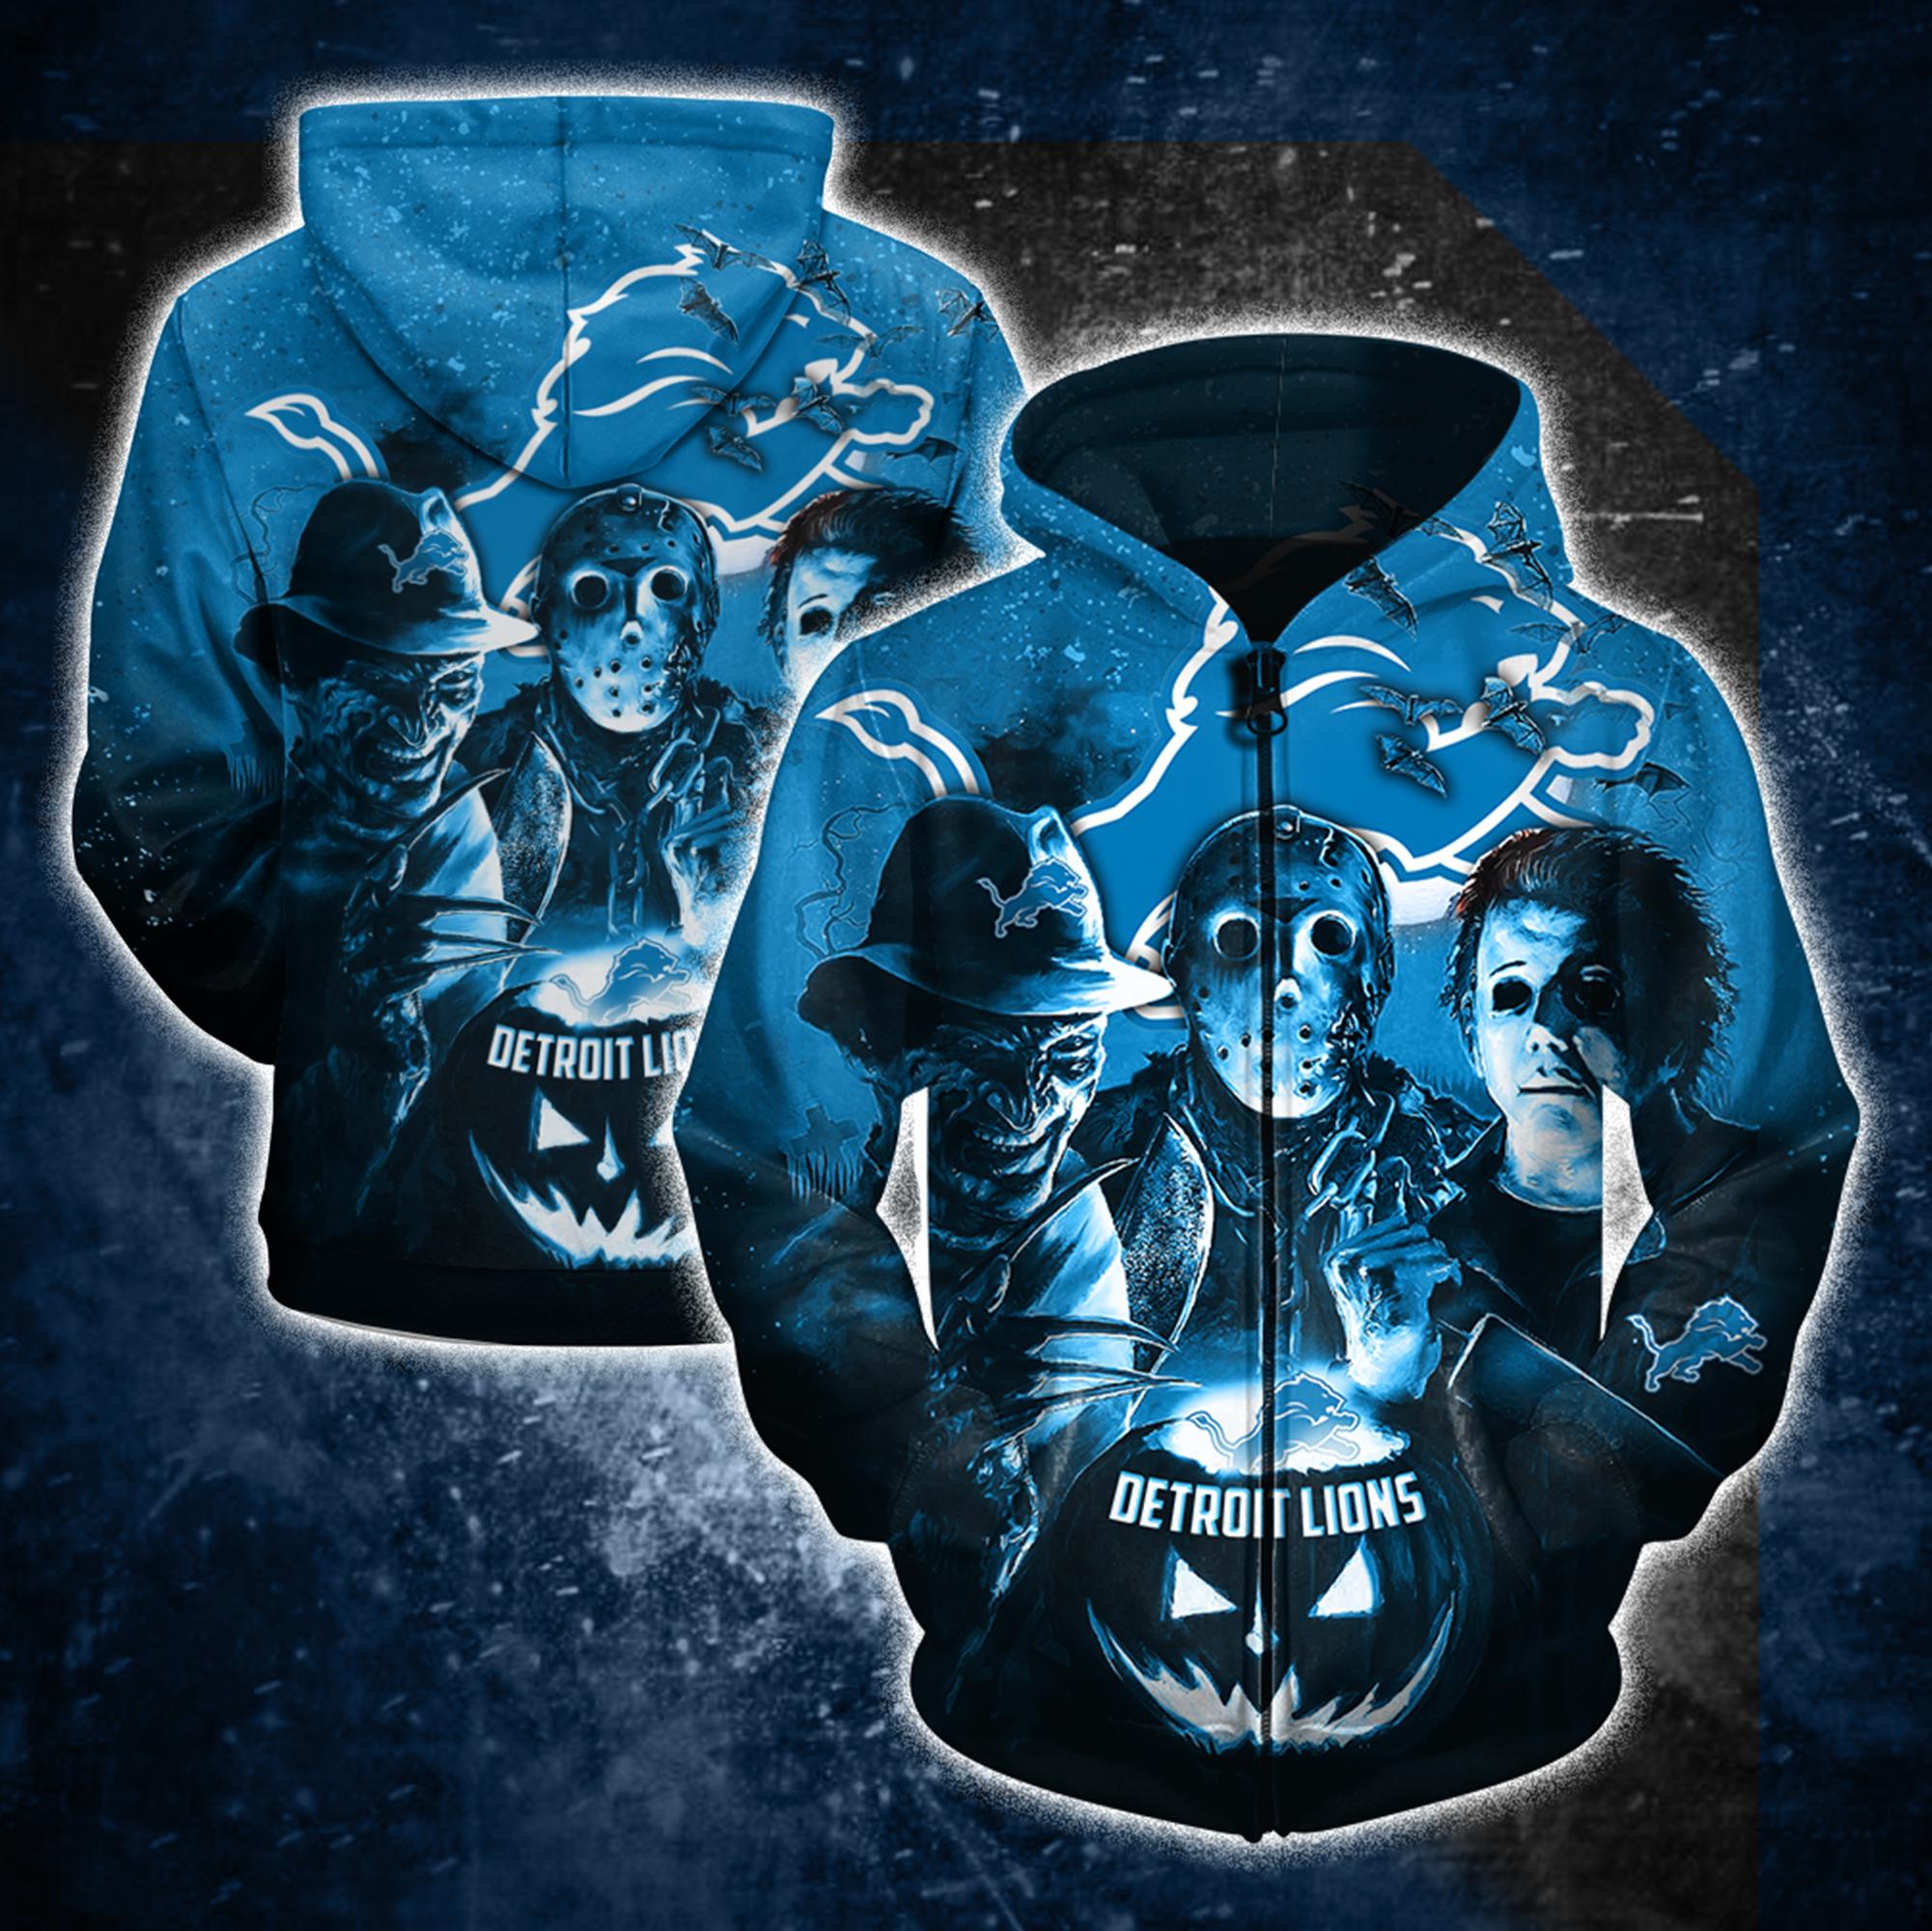 Detroit lions horror movie characters 3d zipper hoodie - size l